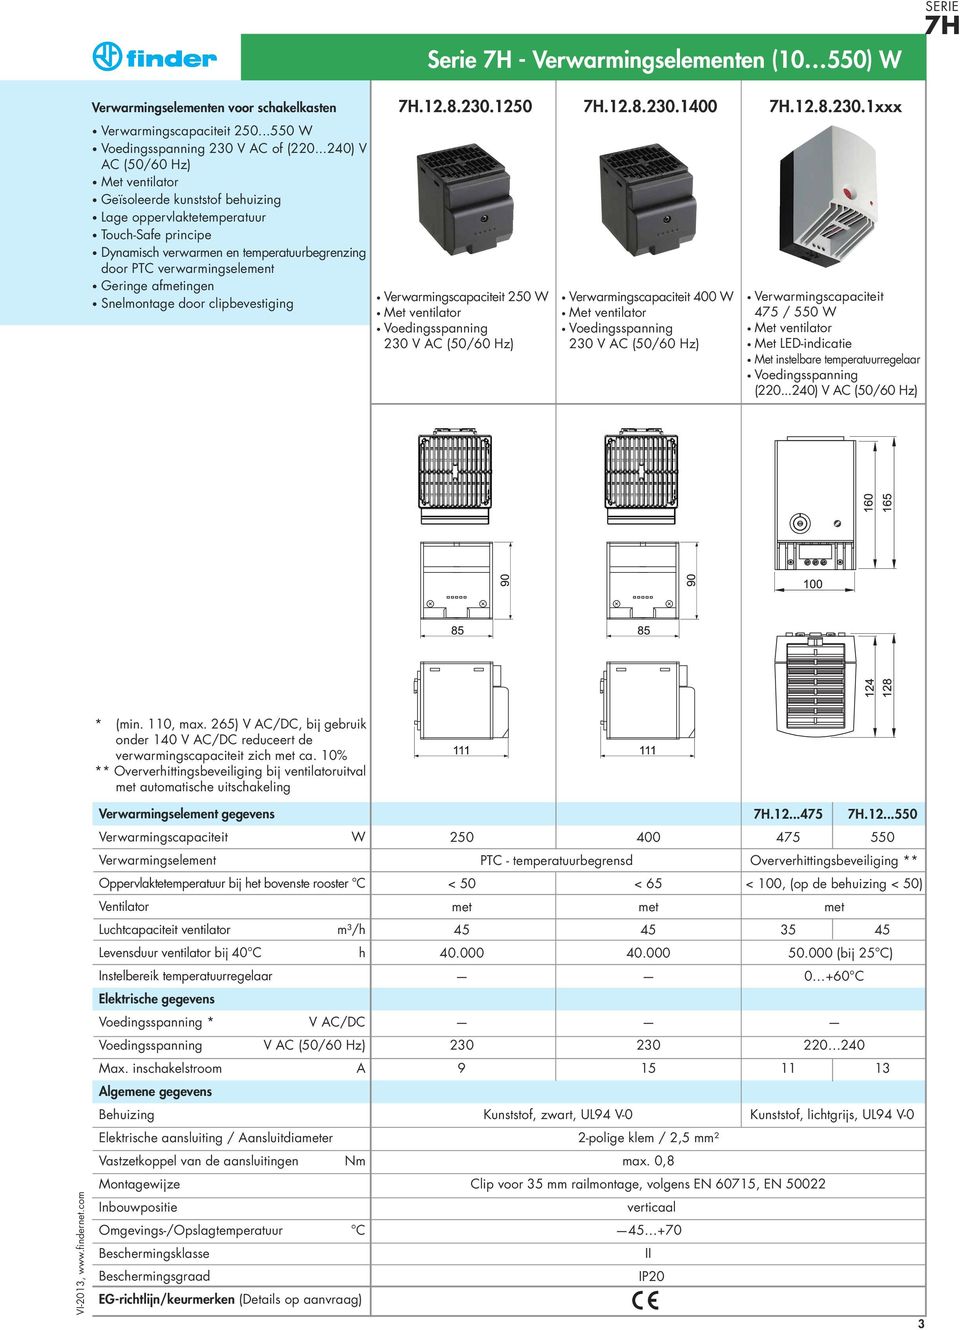 Snelmontage door clipbevestiging.12.8.230.1250.12.8.230.1400.12.8.230.1xxx 250 W 230 V AC (50/60 Hz) 400 W 230 V AC (50/60 Hz) 475 / 550 W Met LED-indicatie Met instelbare temperatuurregelaar (220.